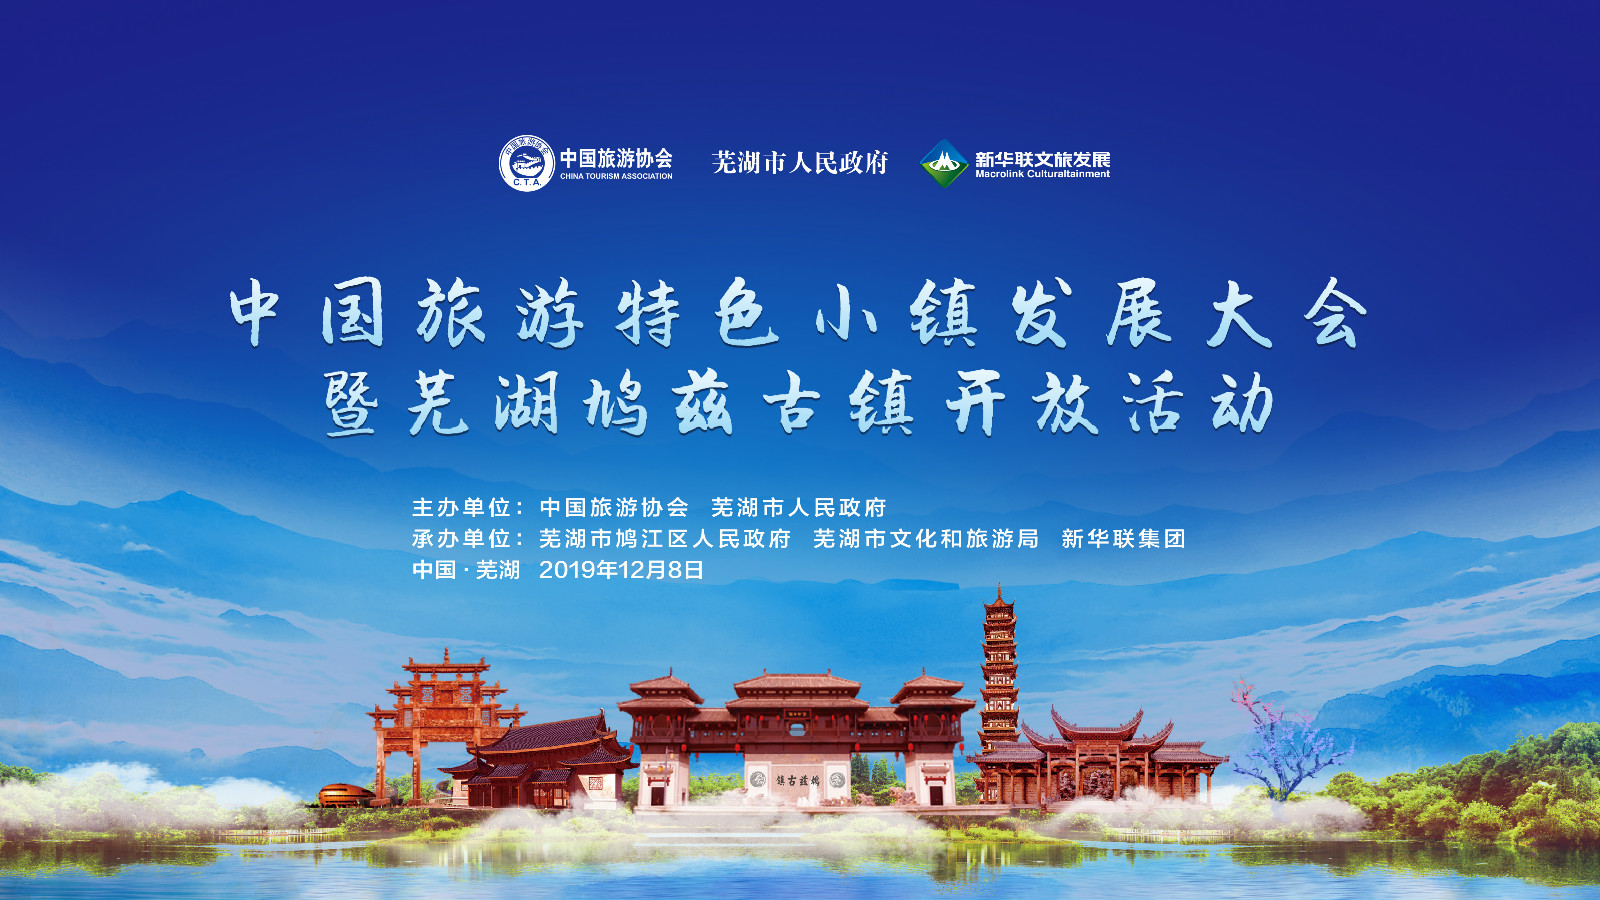 2019中国旅游特色小镇发展大会